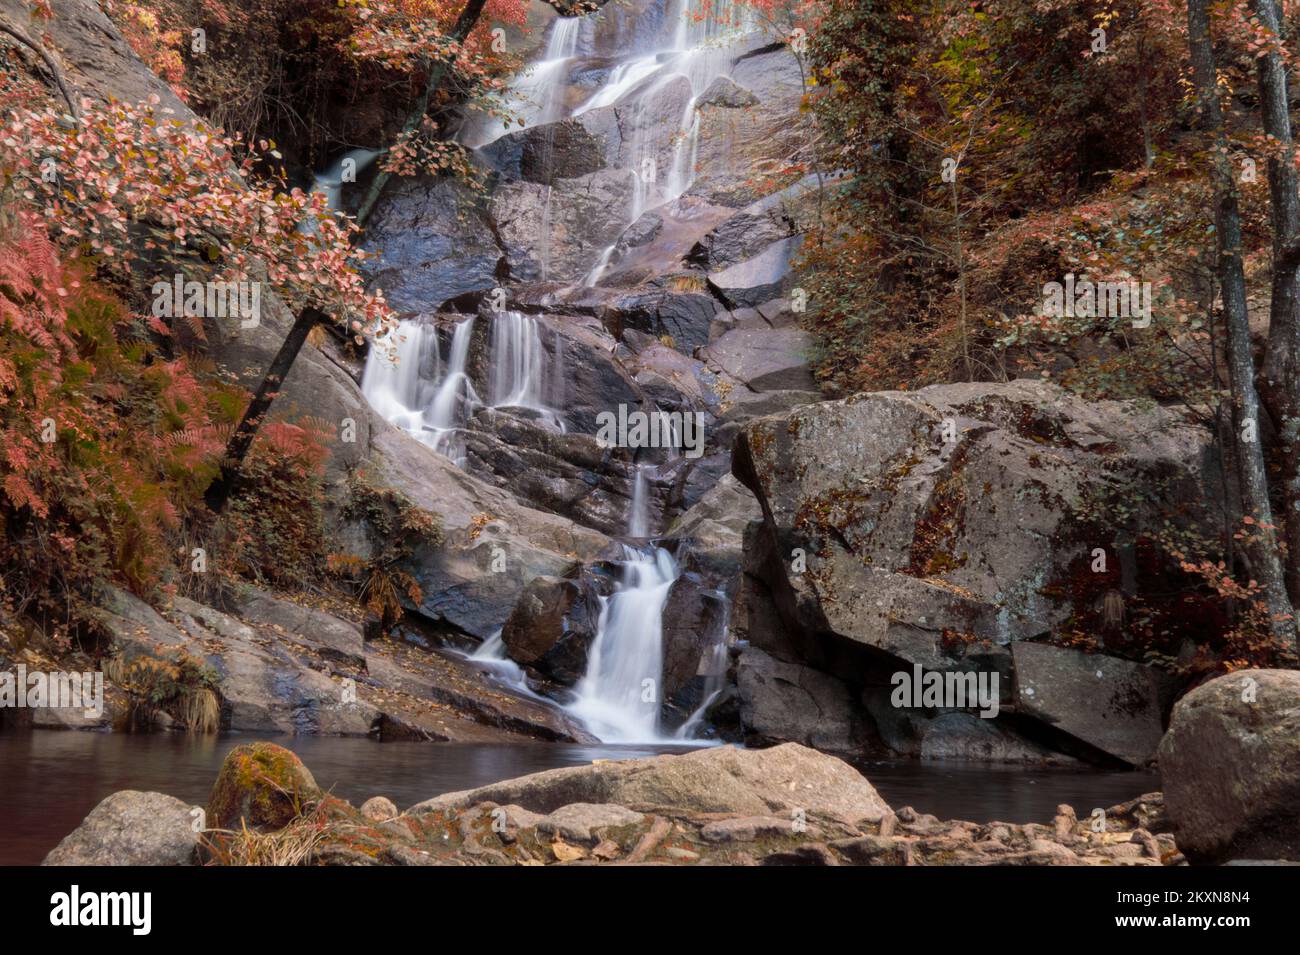 Cascada en la ruta de Las Nogaledas, Cáceres, España, con los colores rojizos del otoño Stock Photo